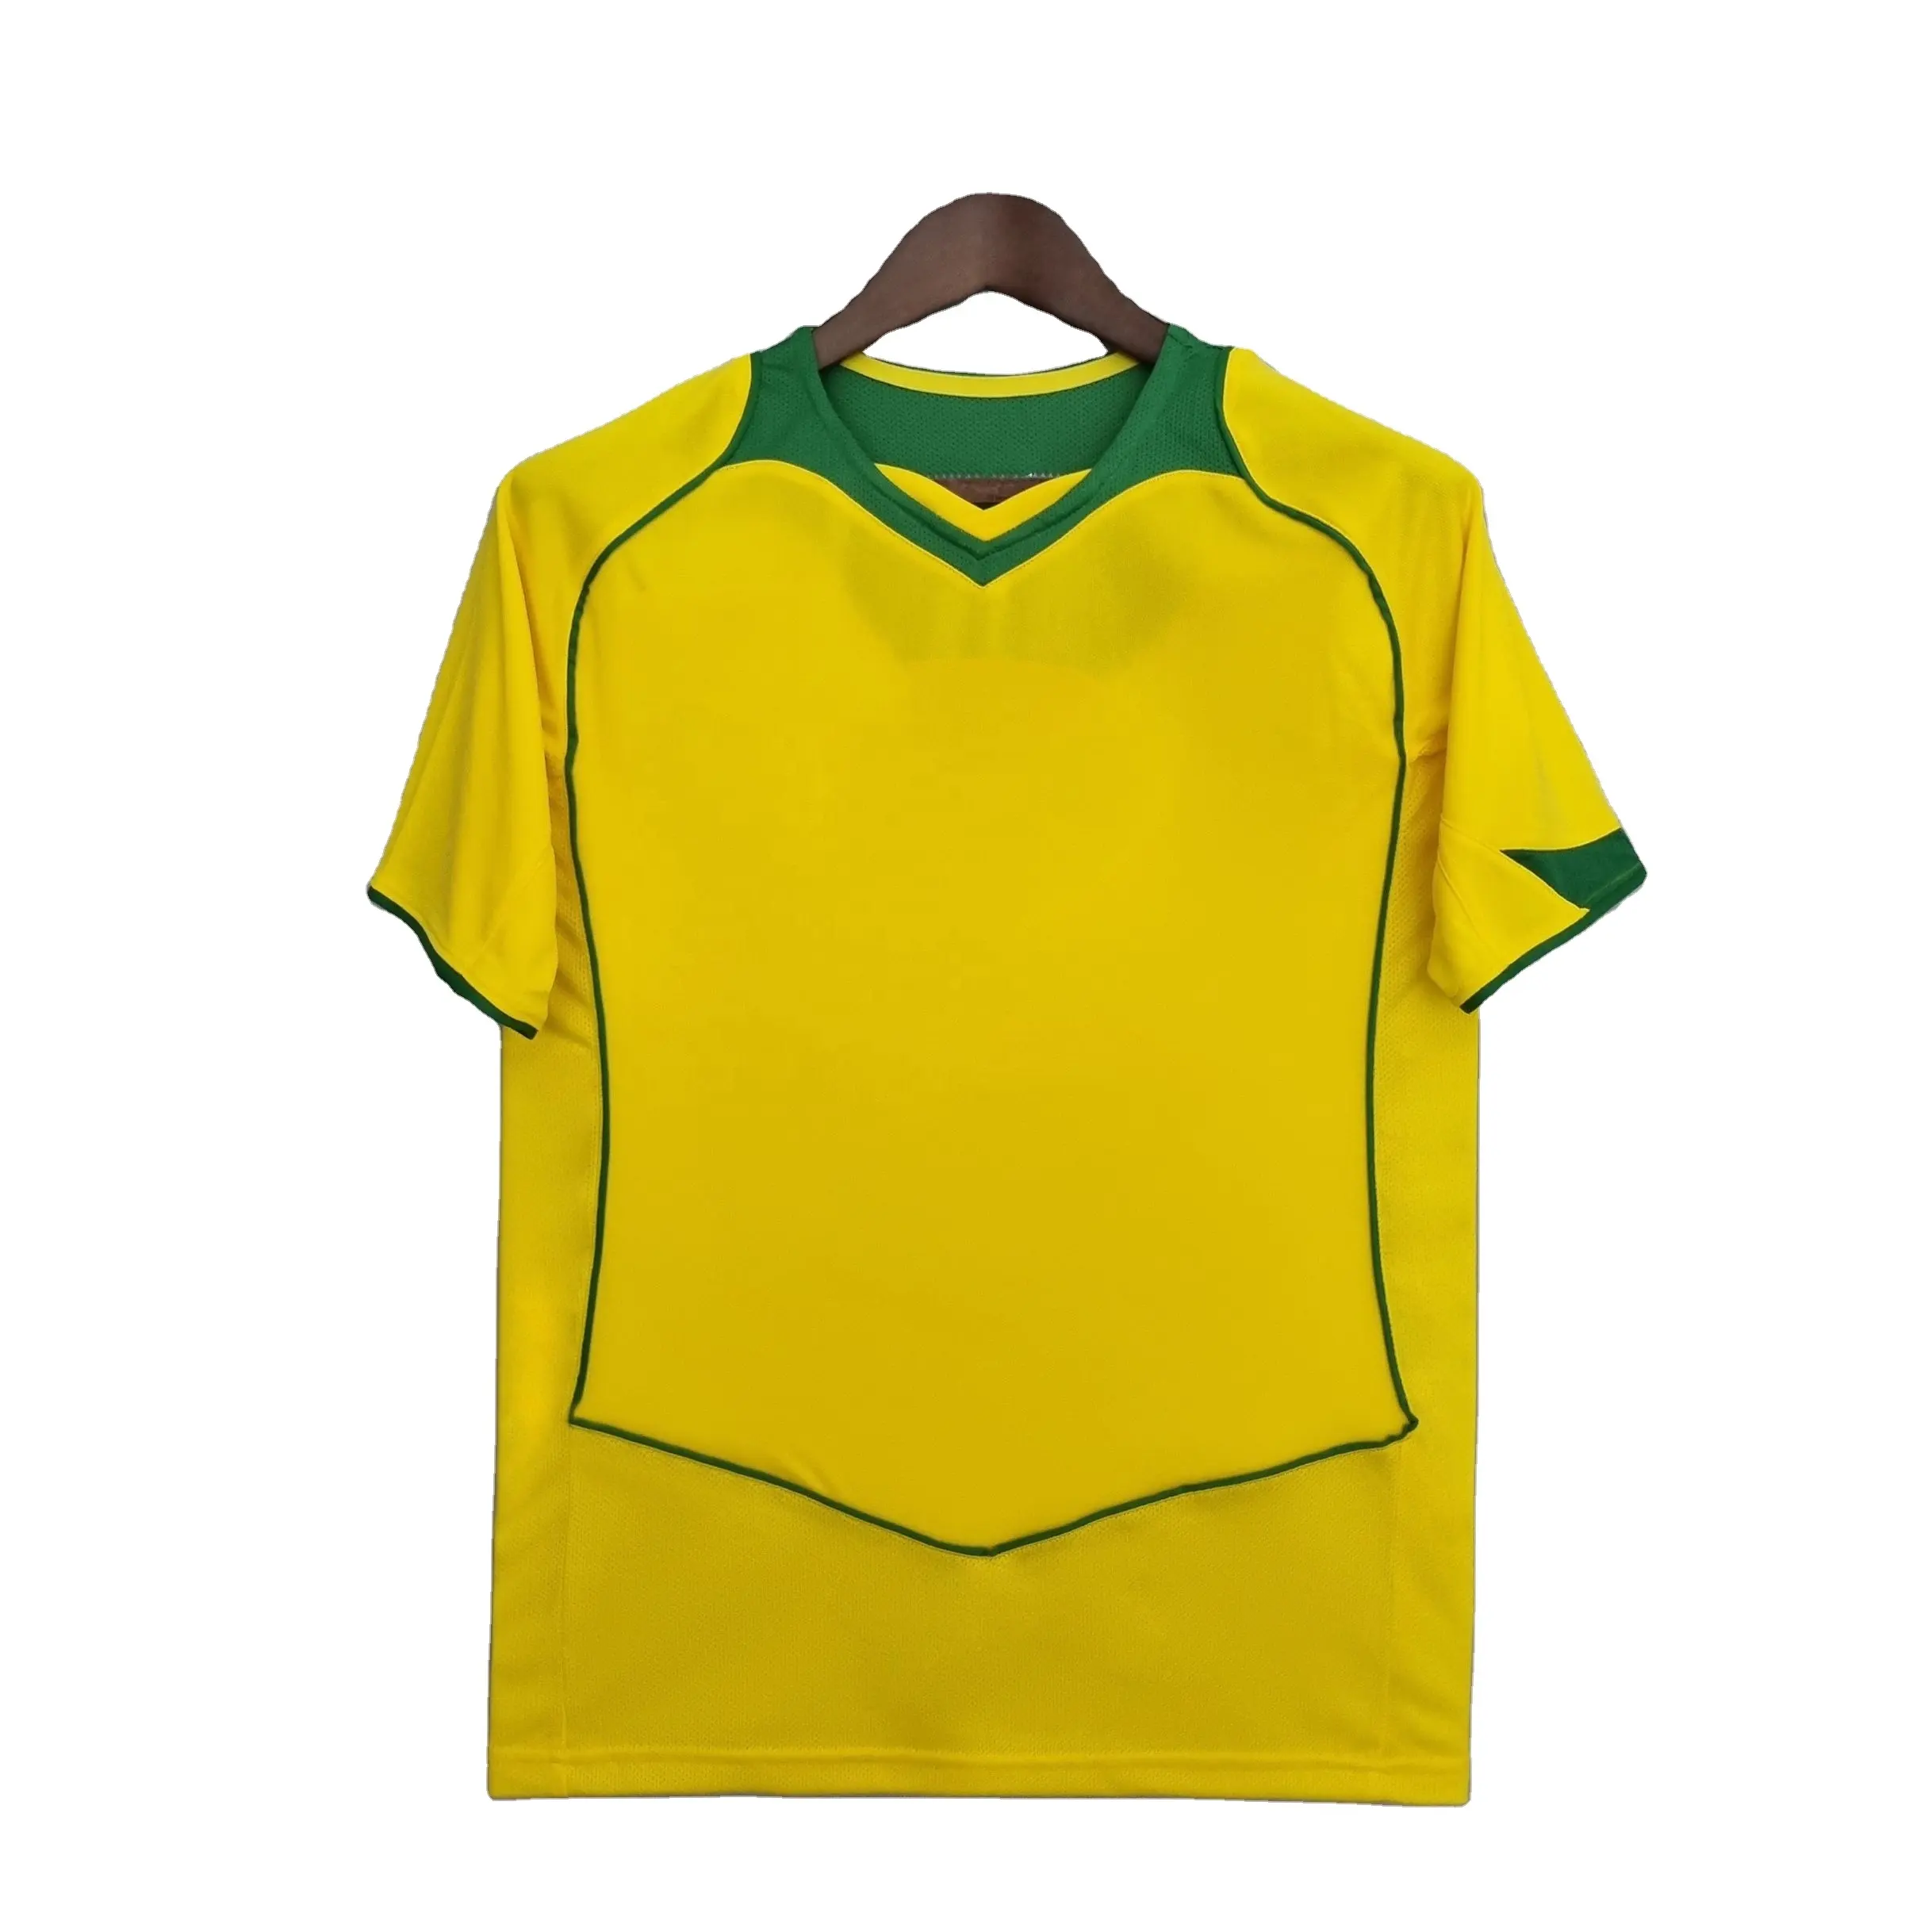 2004/2006 brasile home away maglia da calcio retrò originale gialla e blu da uomo thailandia maglia da calcio